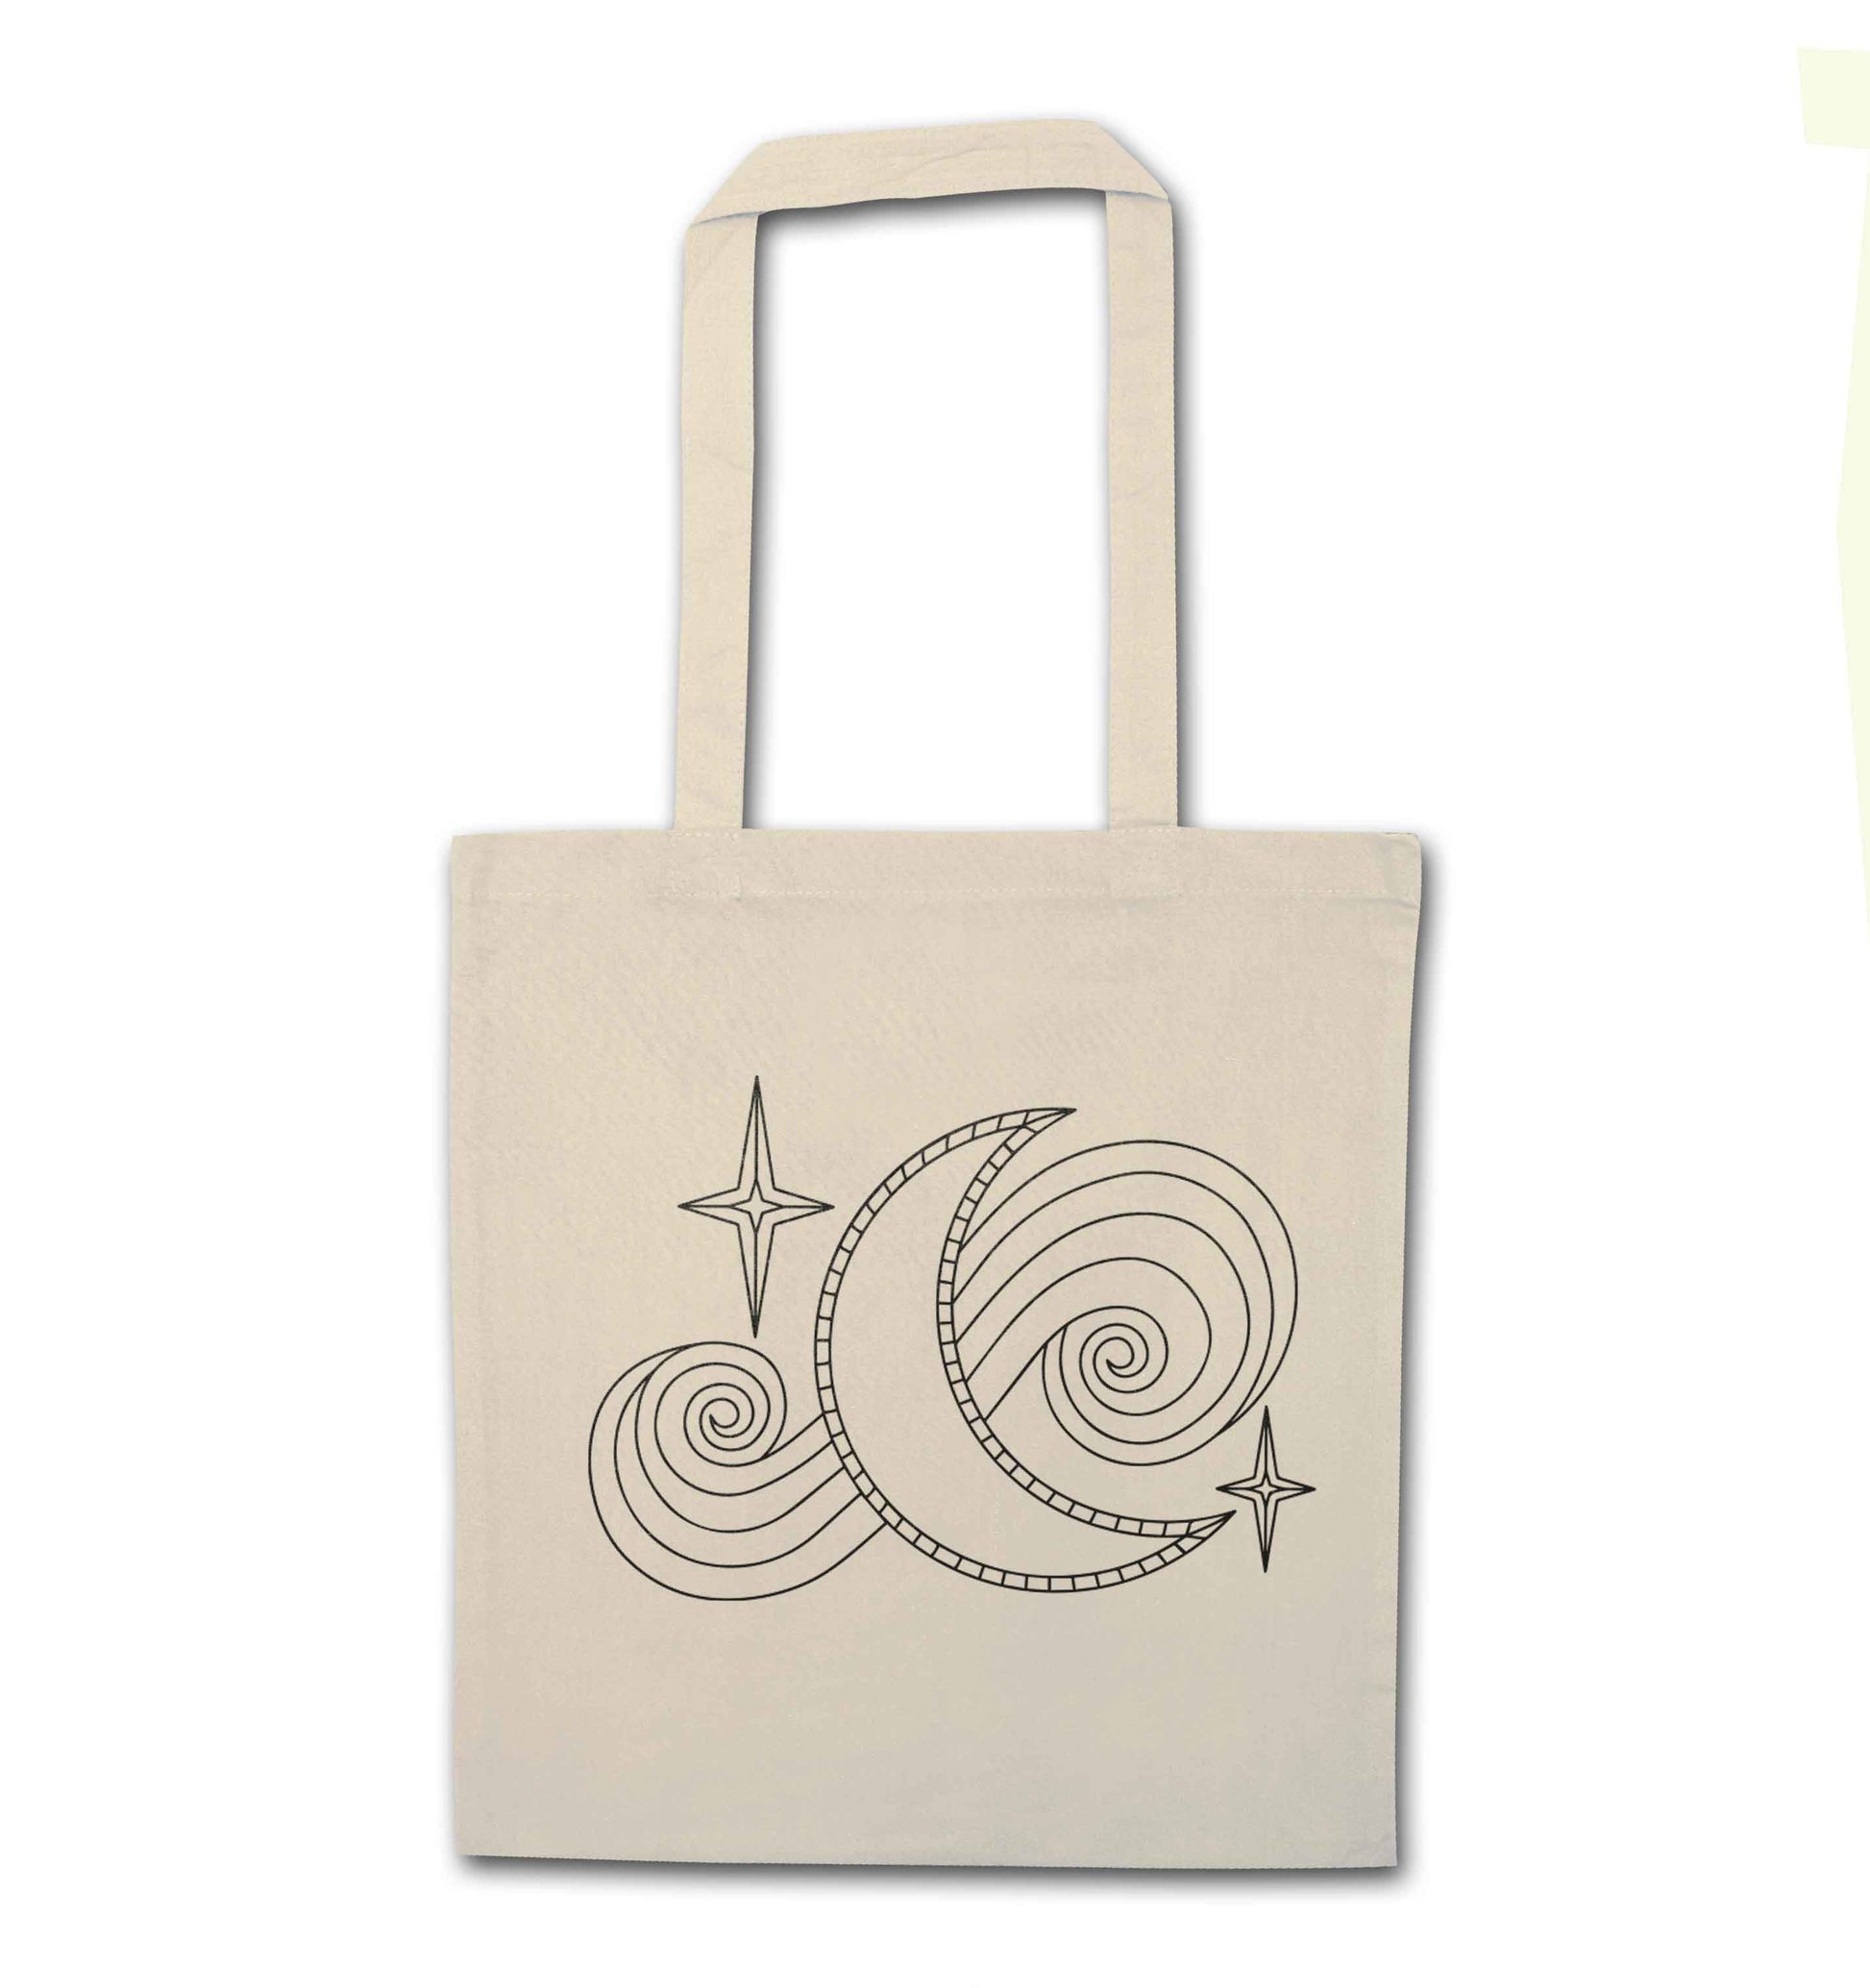 Moon and stars illustration natural tote bag